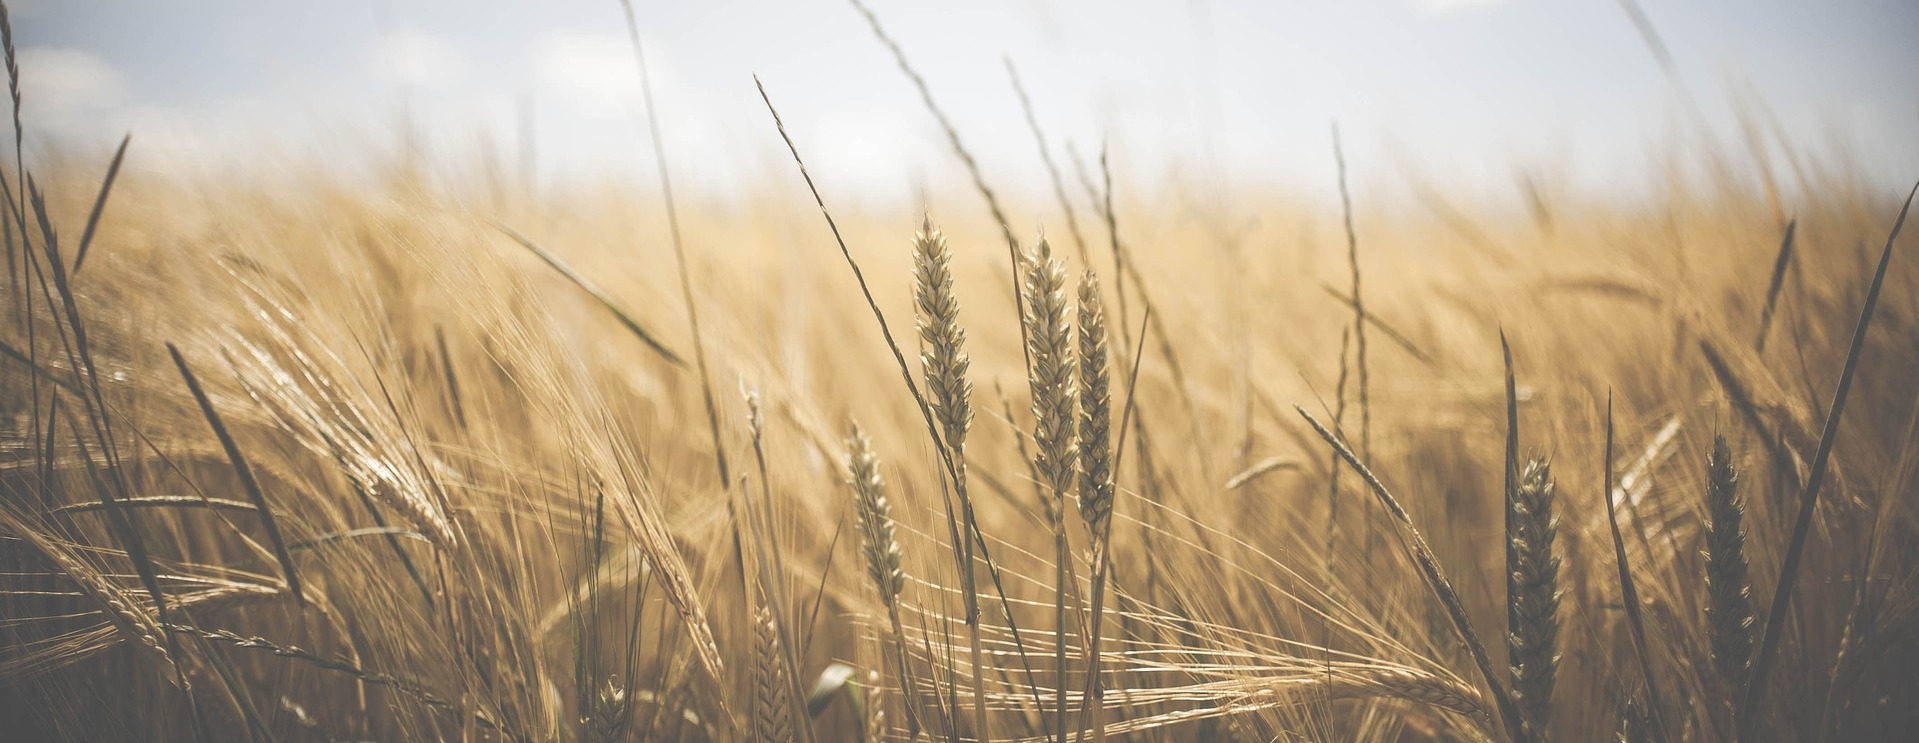 Семь центров по селекции пшеницы создадут в России до 2023 года